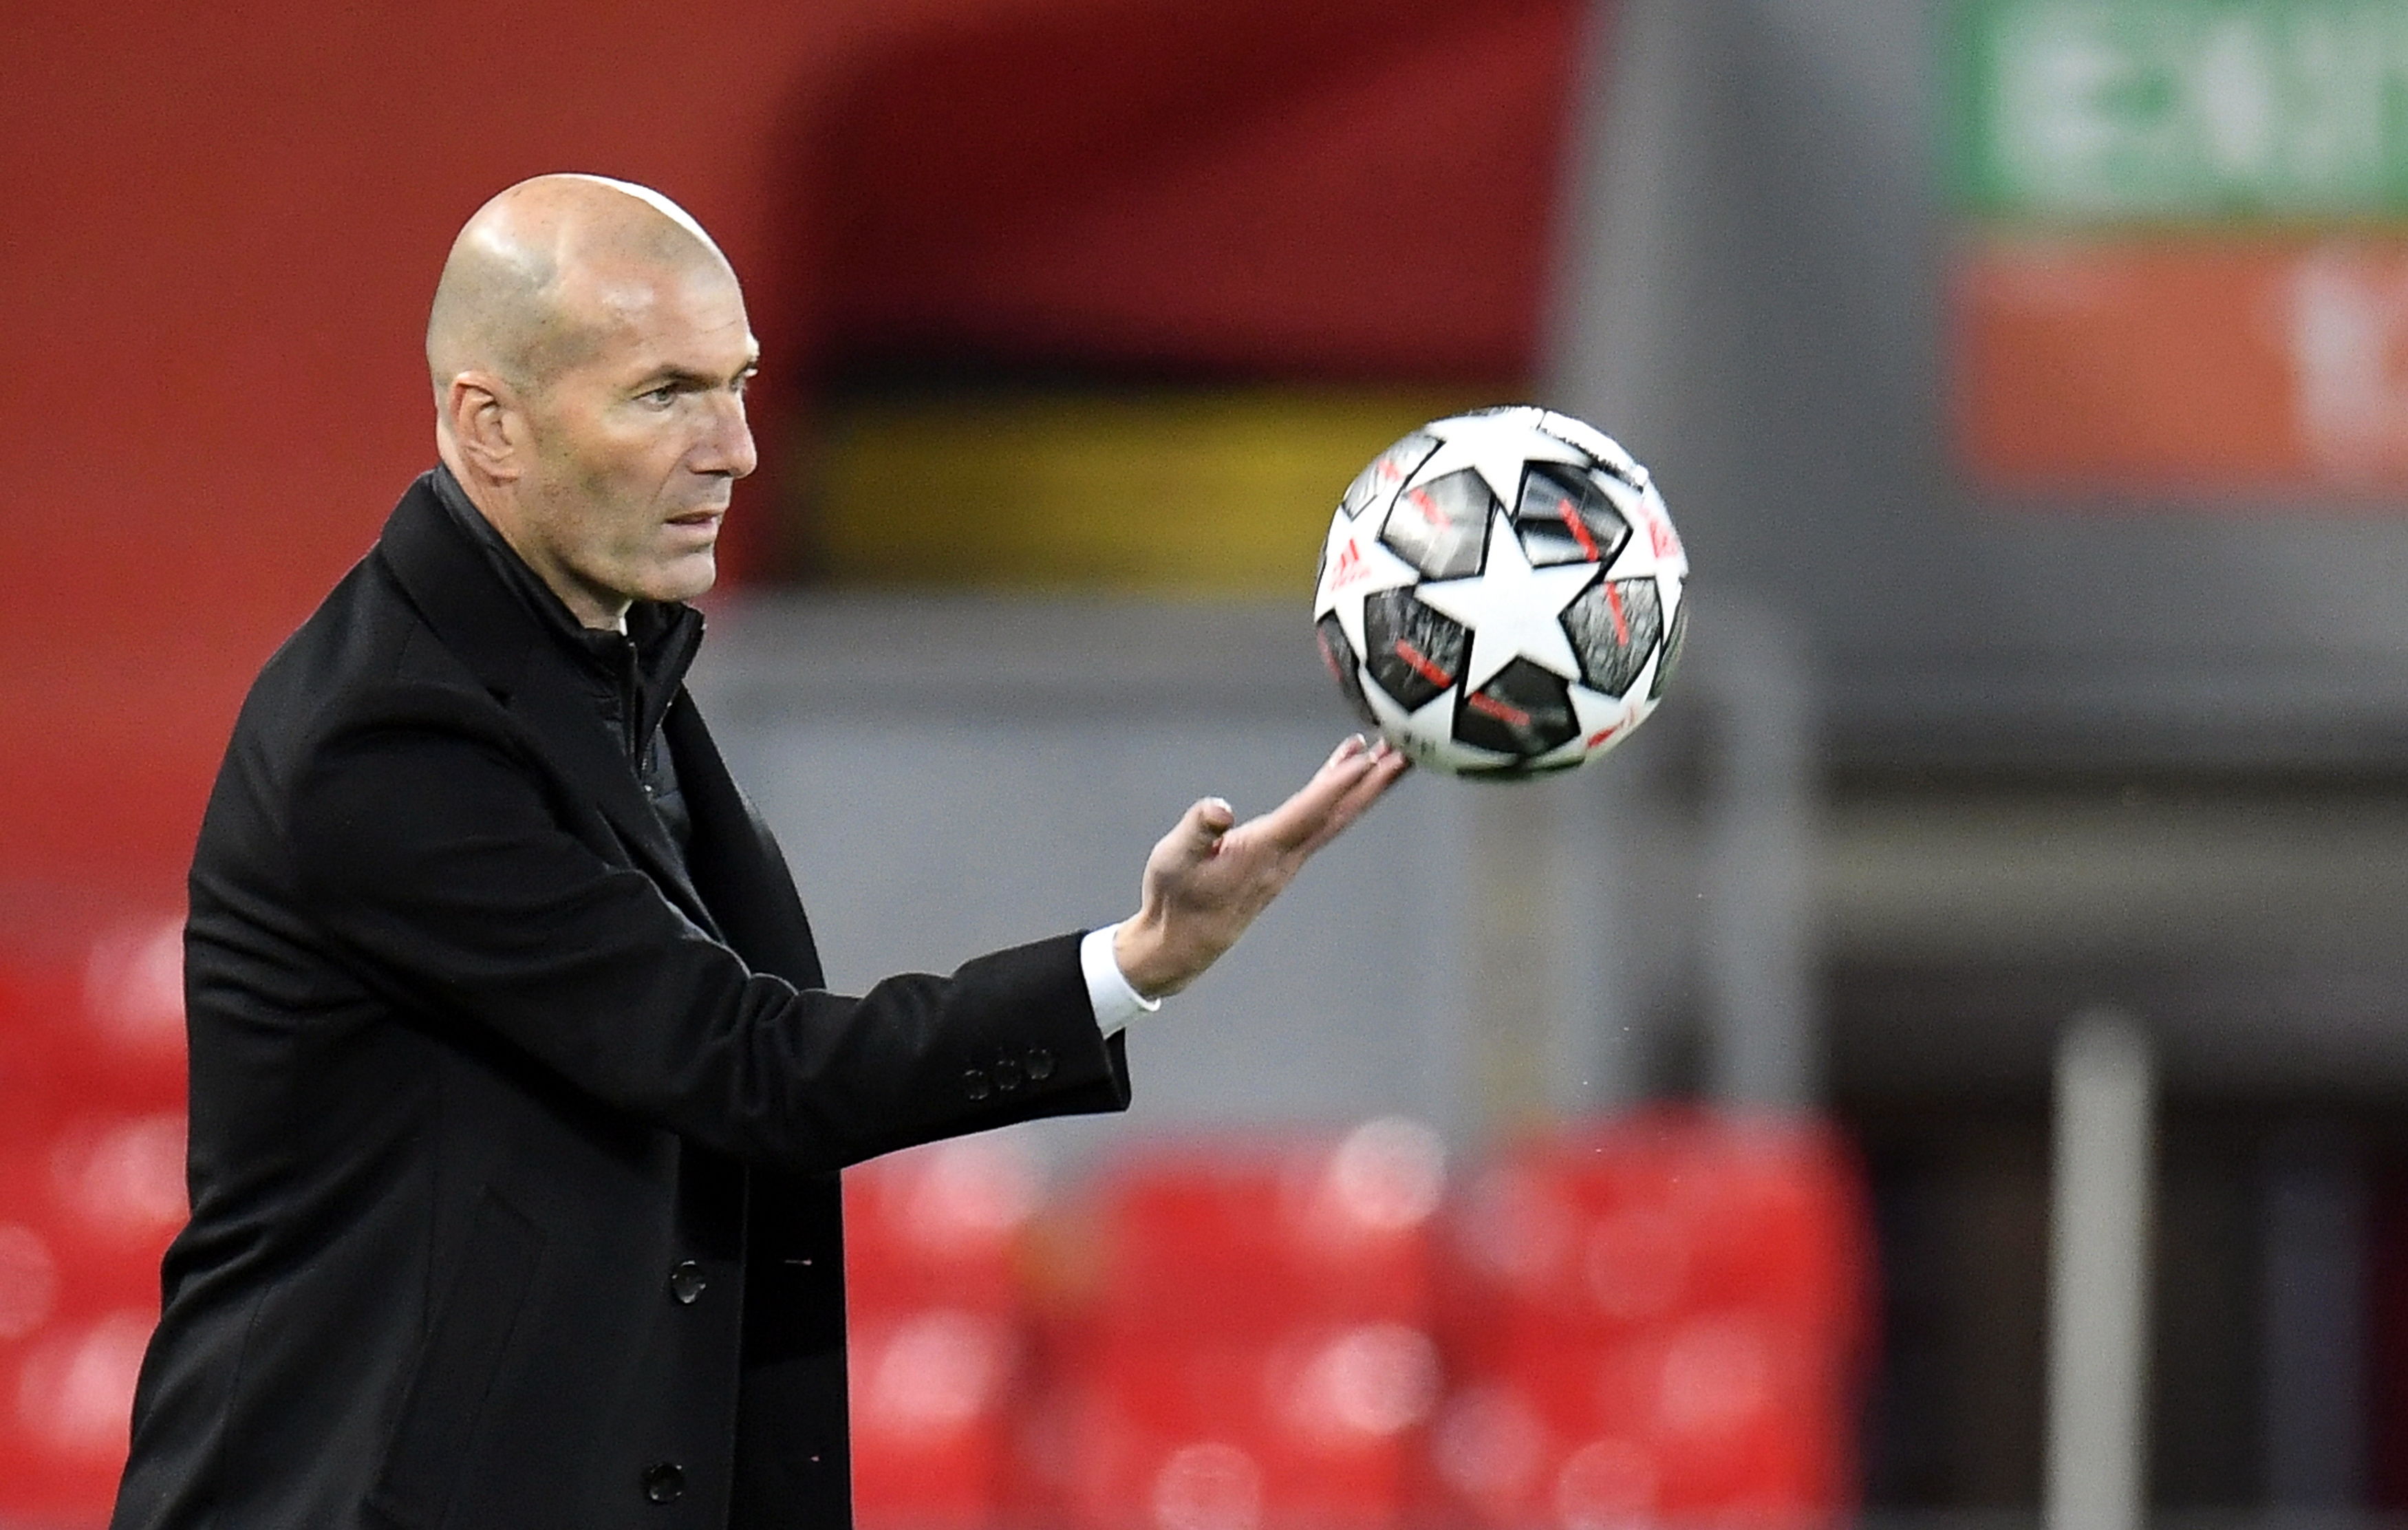 El técnico del Real Madrid, Zinedine Zidane, no cree que la Uefa deba sancionarlos por formar la Superliga Europea. Foto Prensa Libre: EFE.